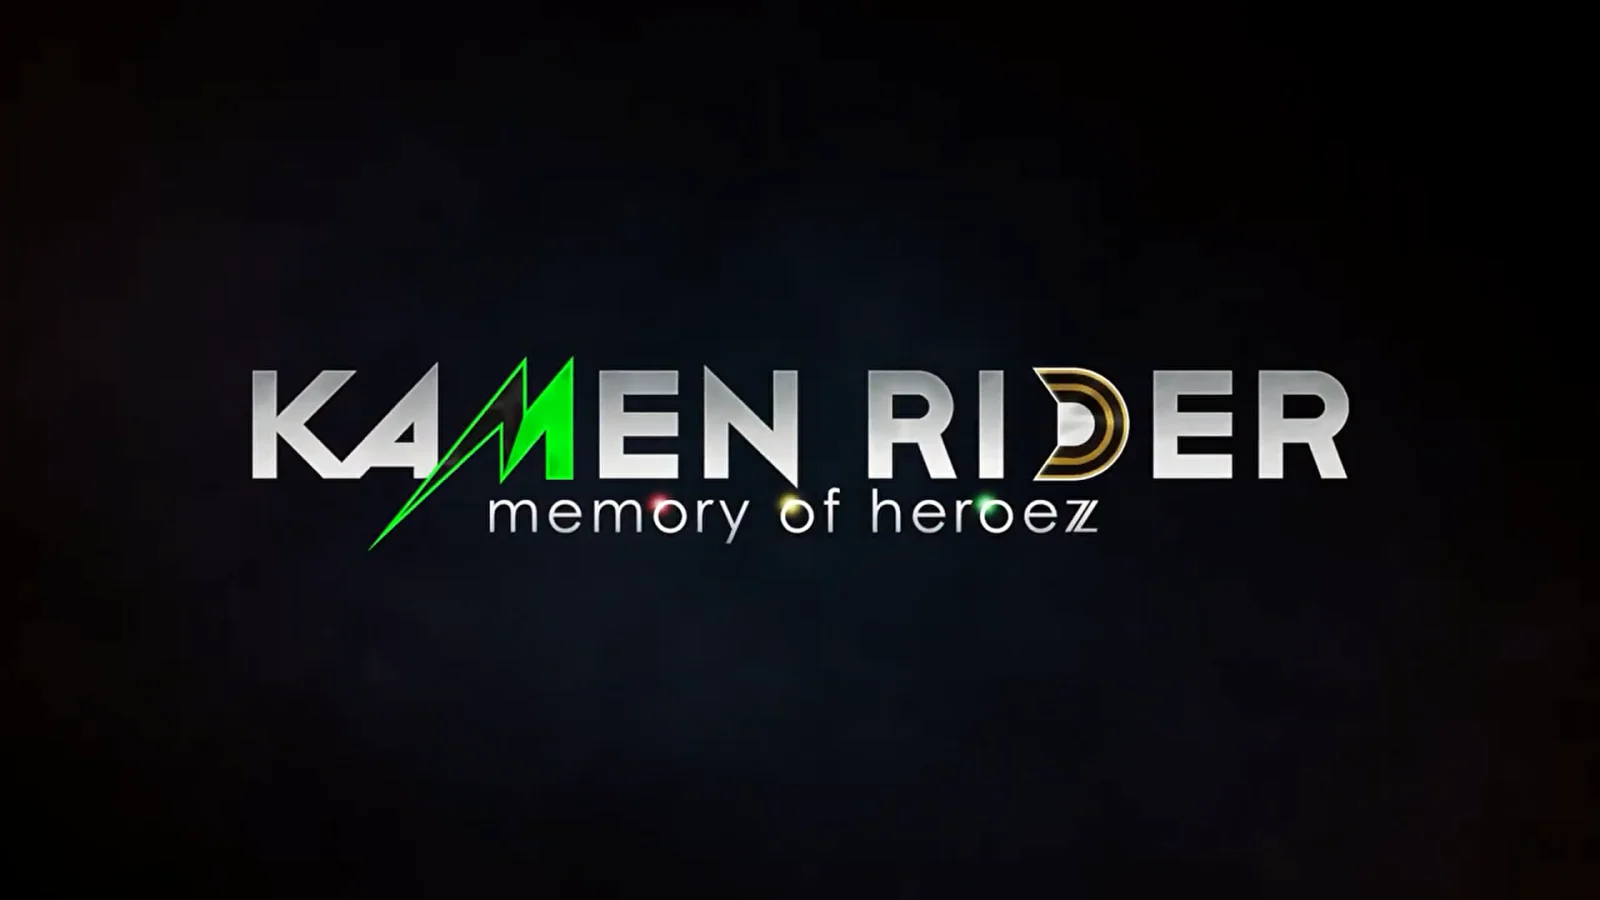 假面骑士游戏《KAMEN RIDER memory of heroez》公布首支宣传片